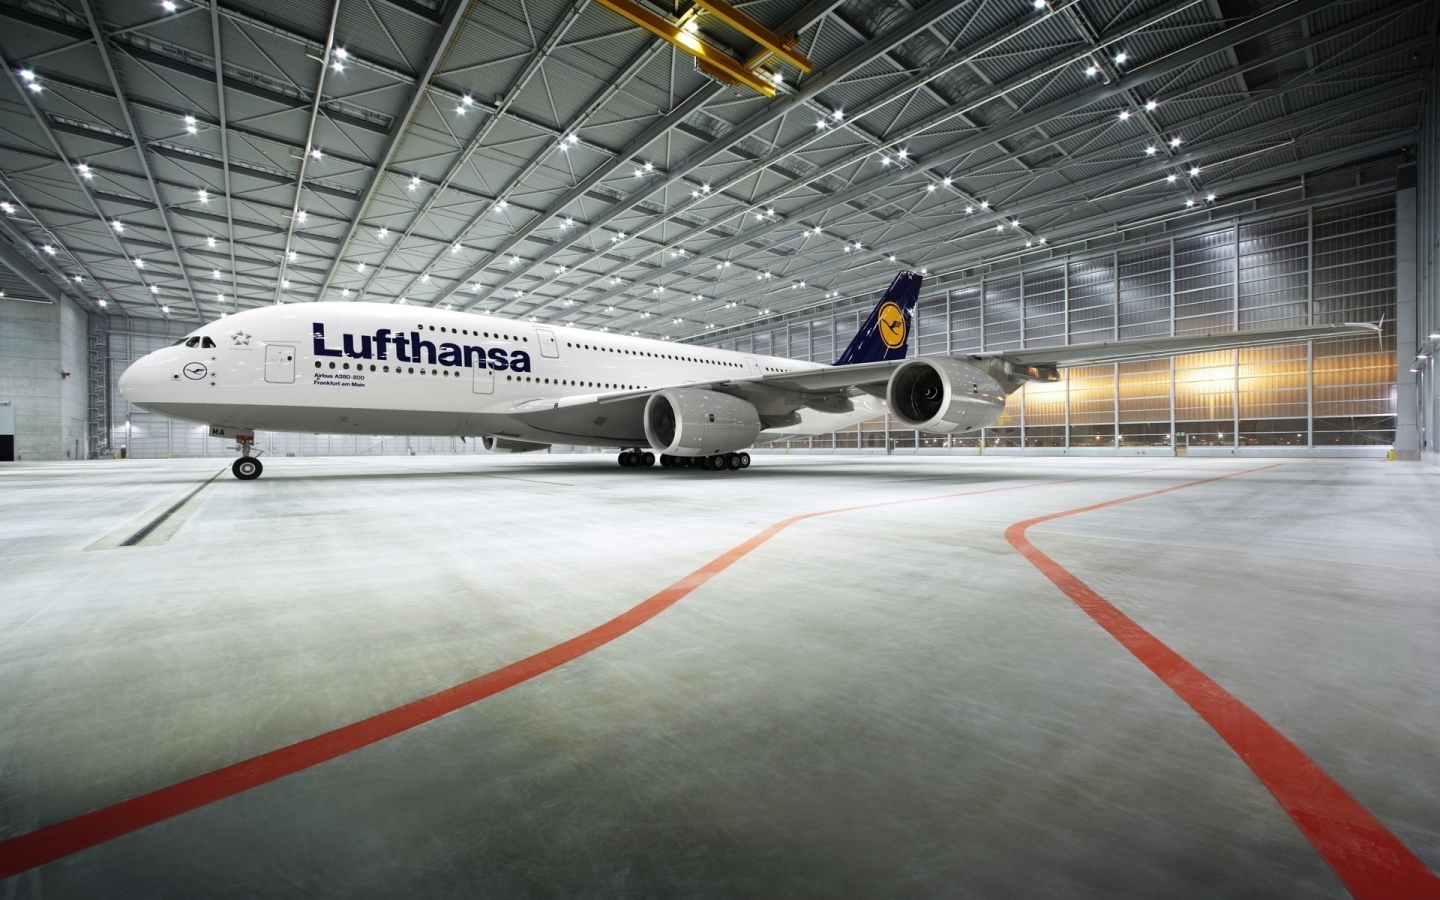 Lufthansa for 1440 x 900 widescreen resolution